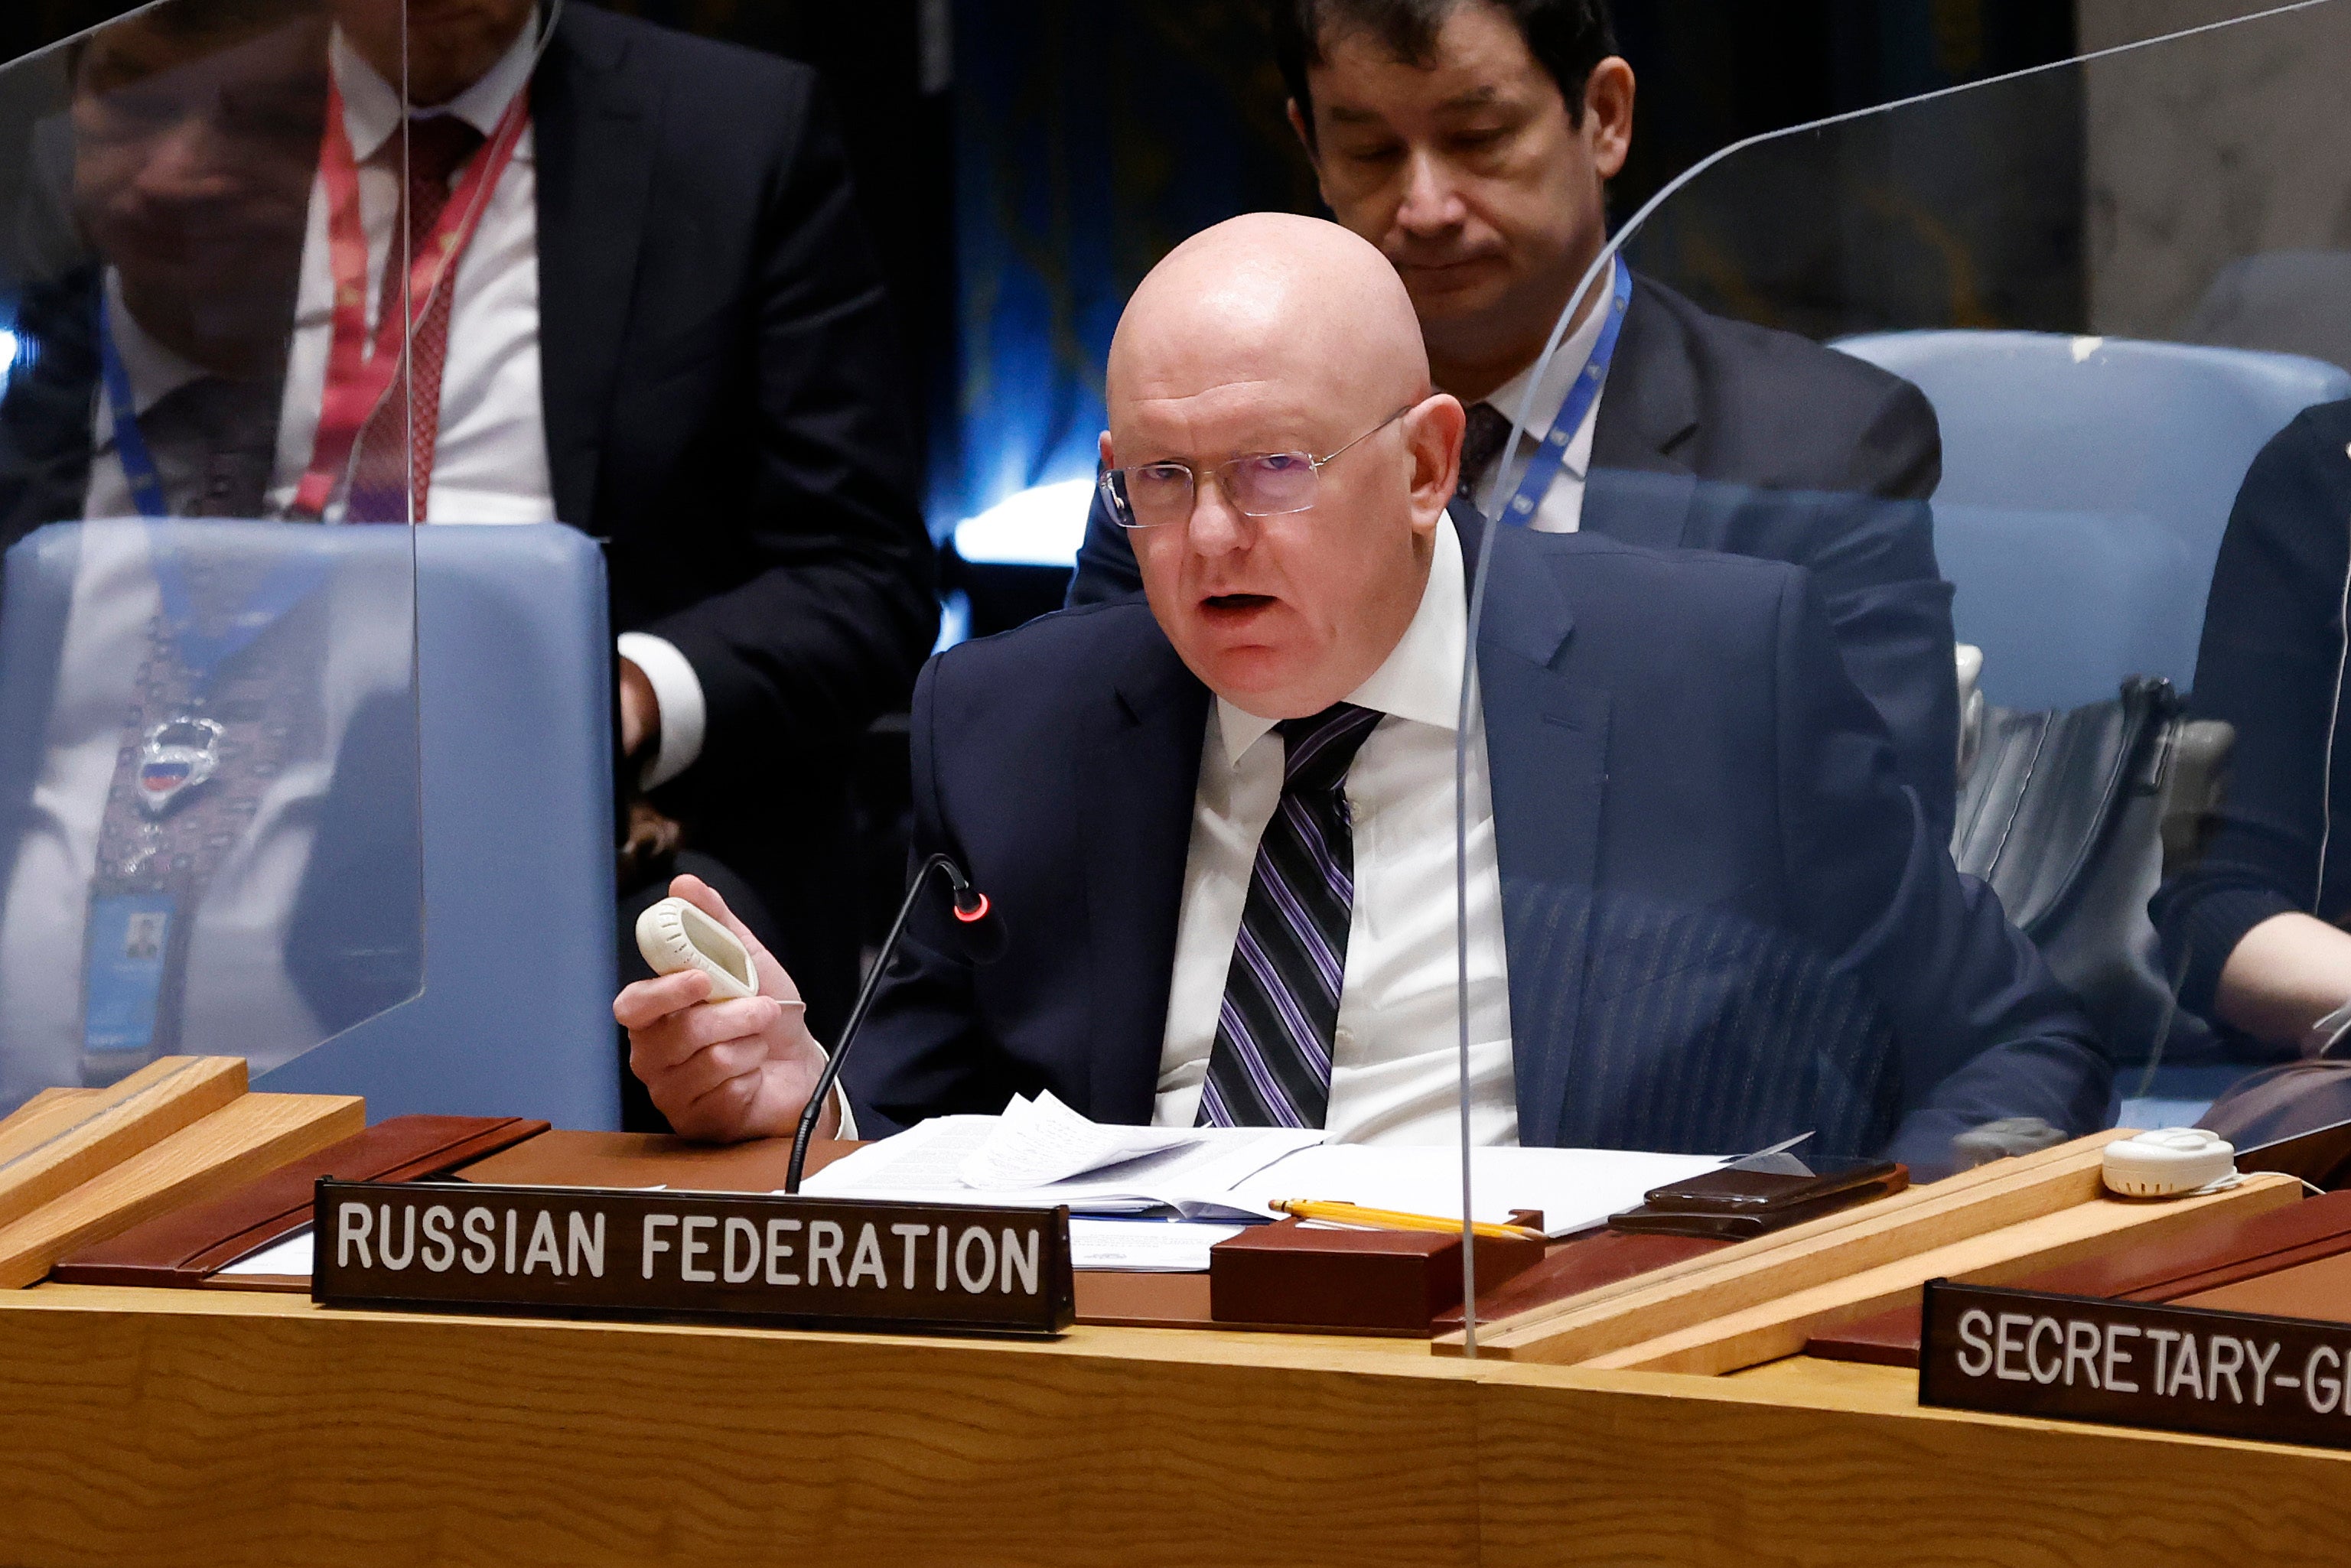 Vasily Nebenzya, the target of Sergiy Kyslytsya’s anger at the UN